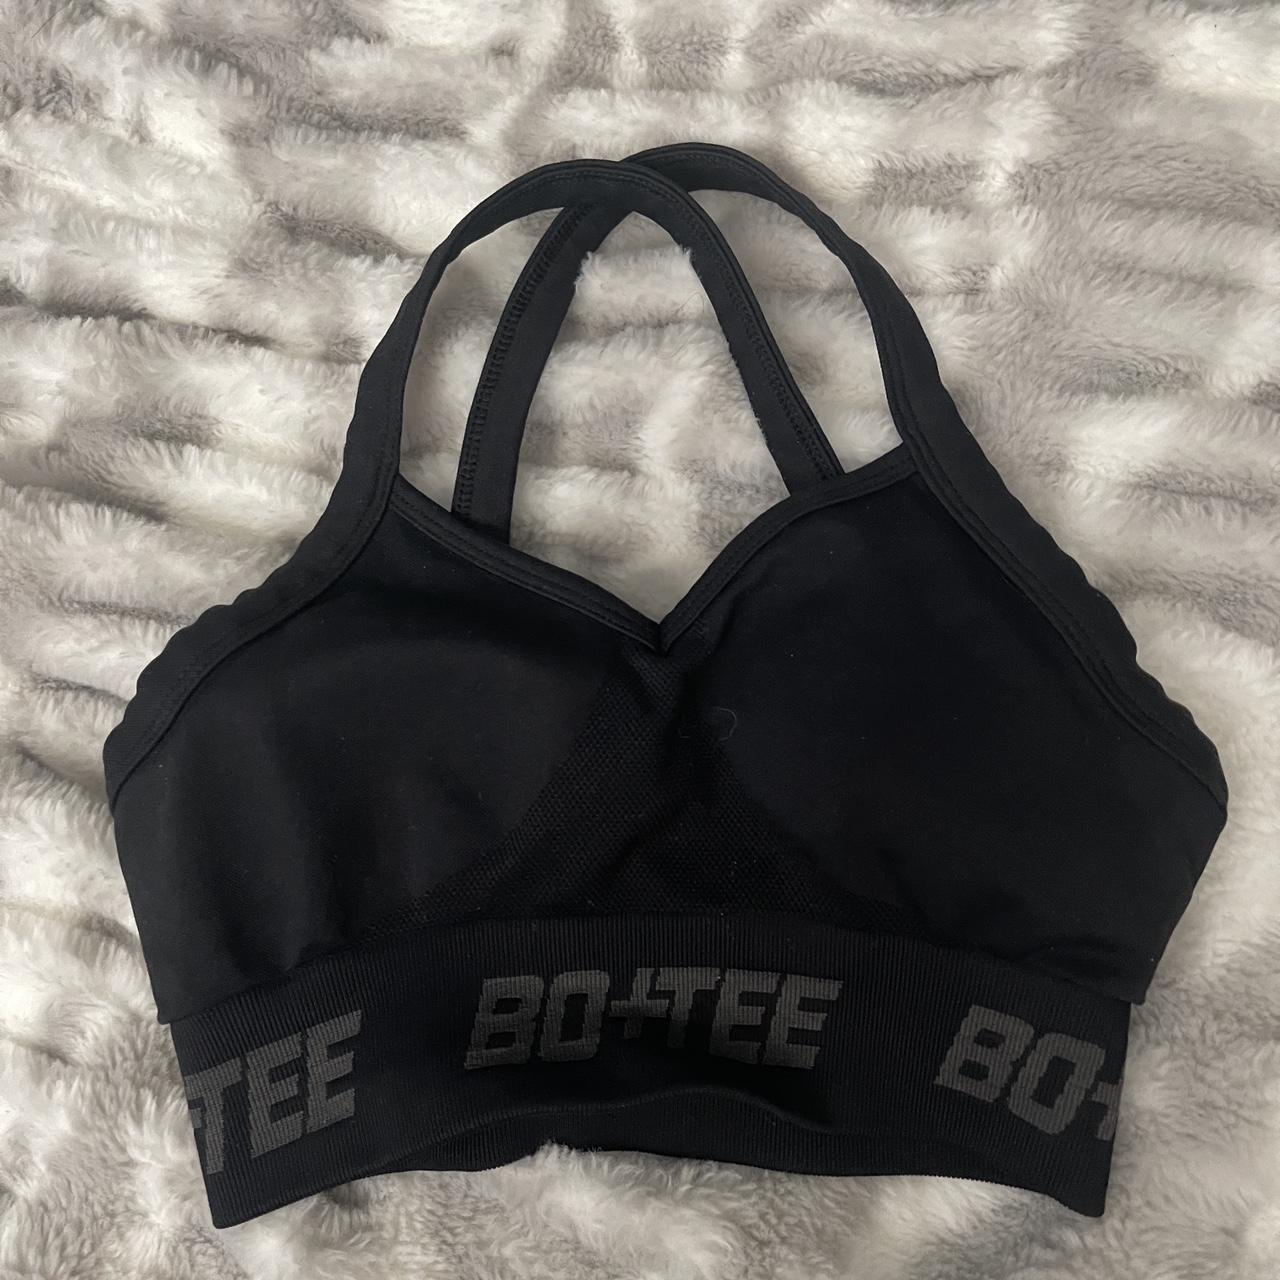 Bo & T sports bra black XS, size 0 #boandtee - Depop